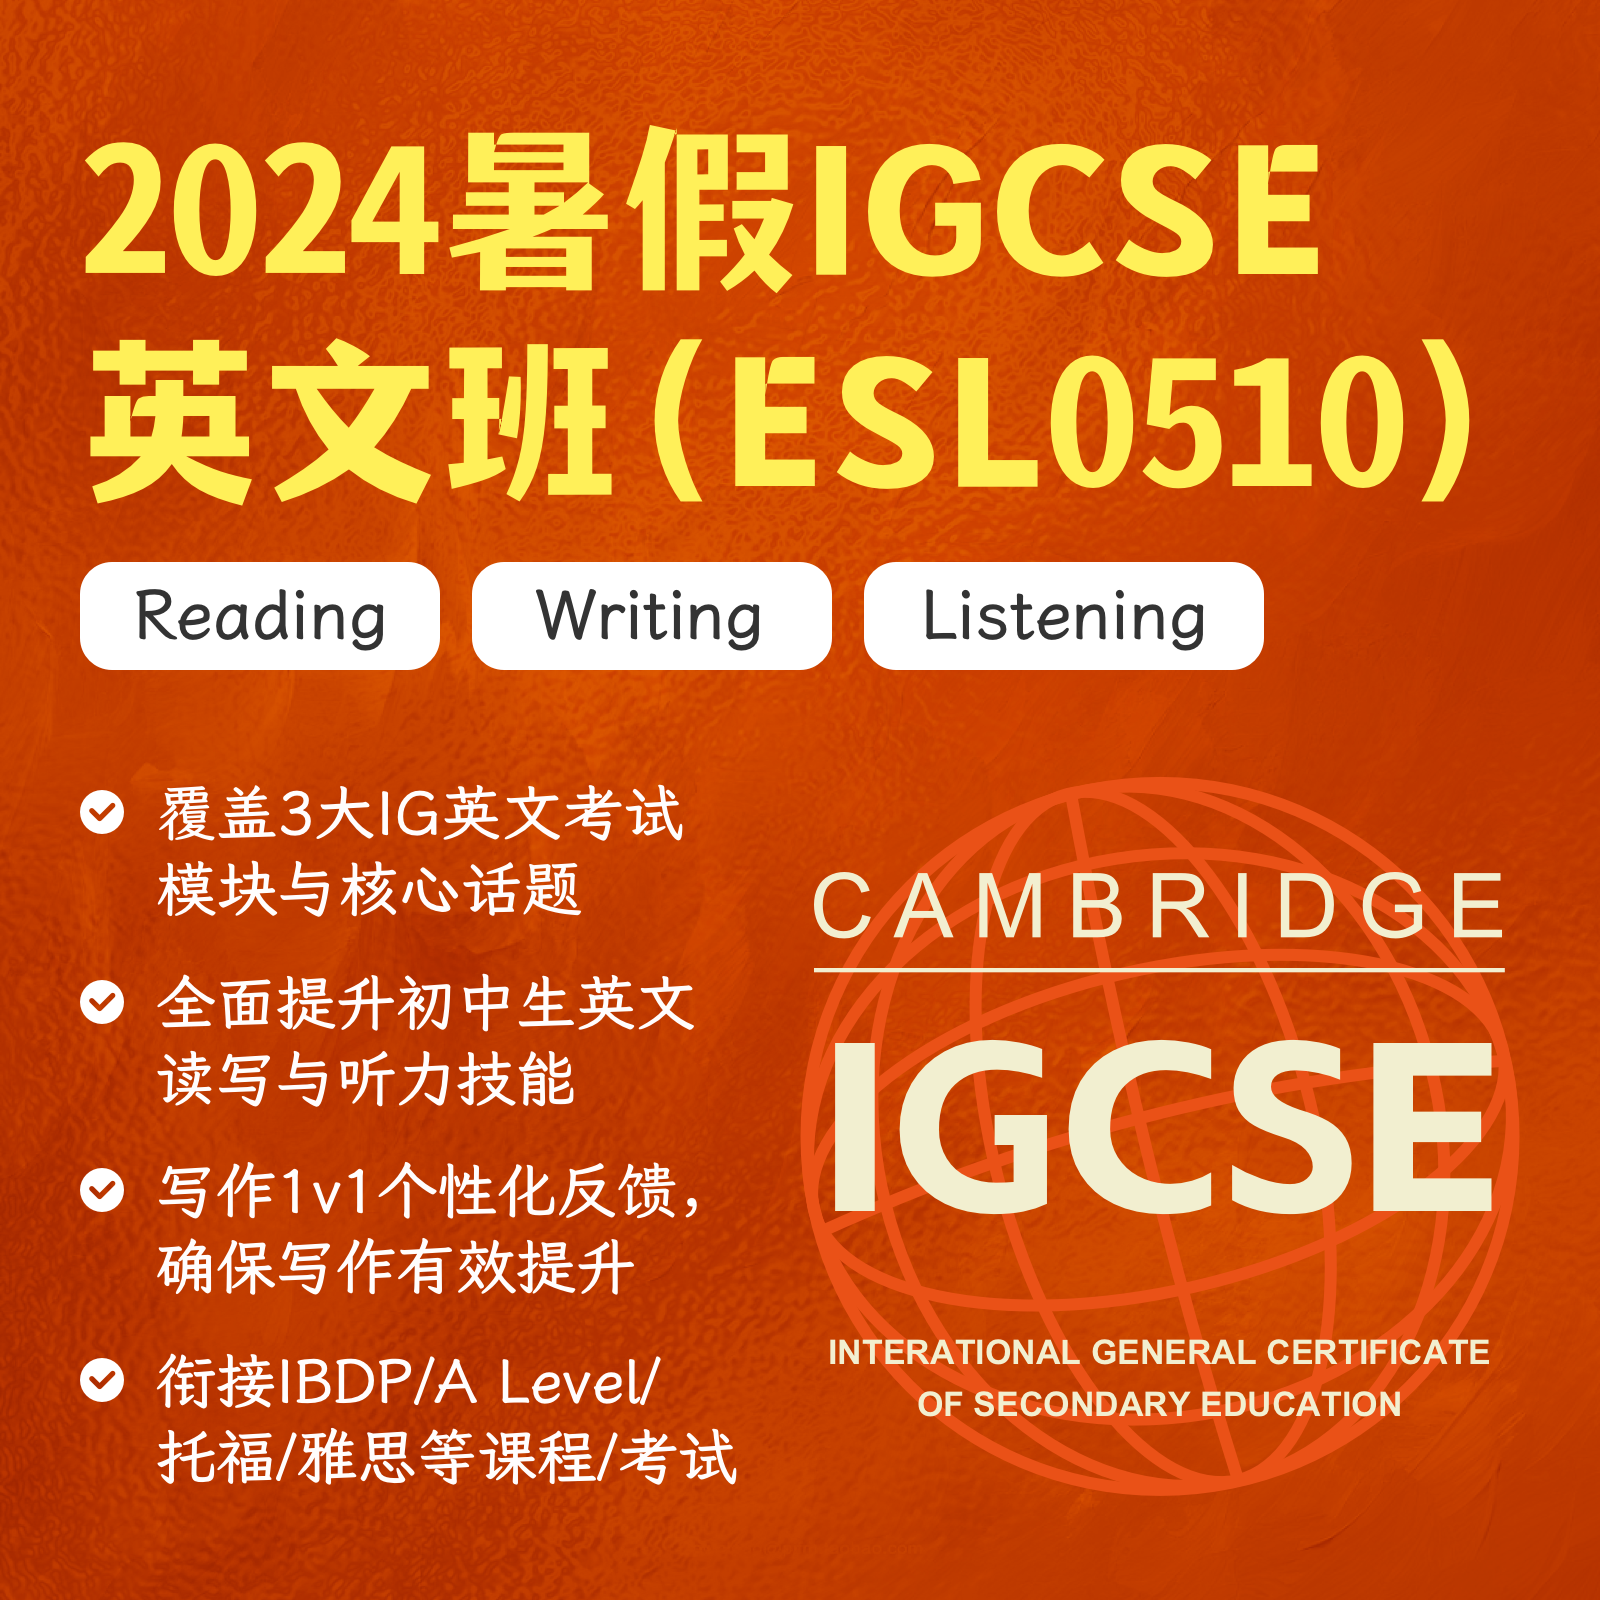 2024暑假IGCSE英文班（ESL0510）